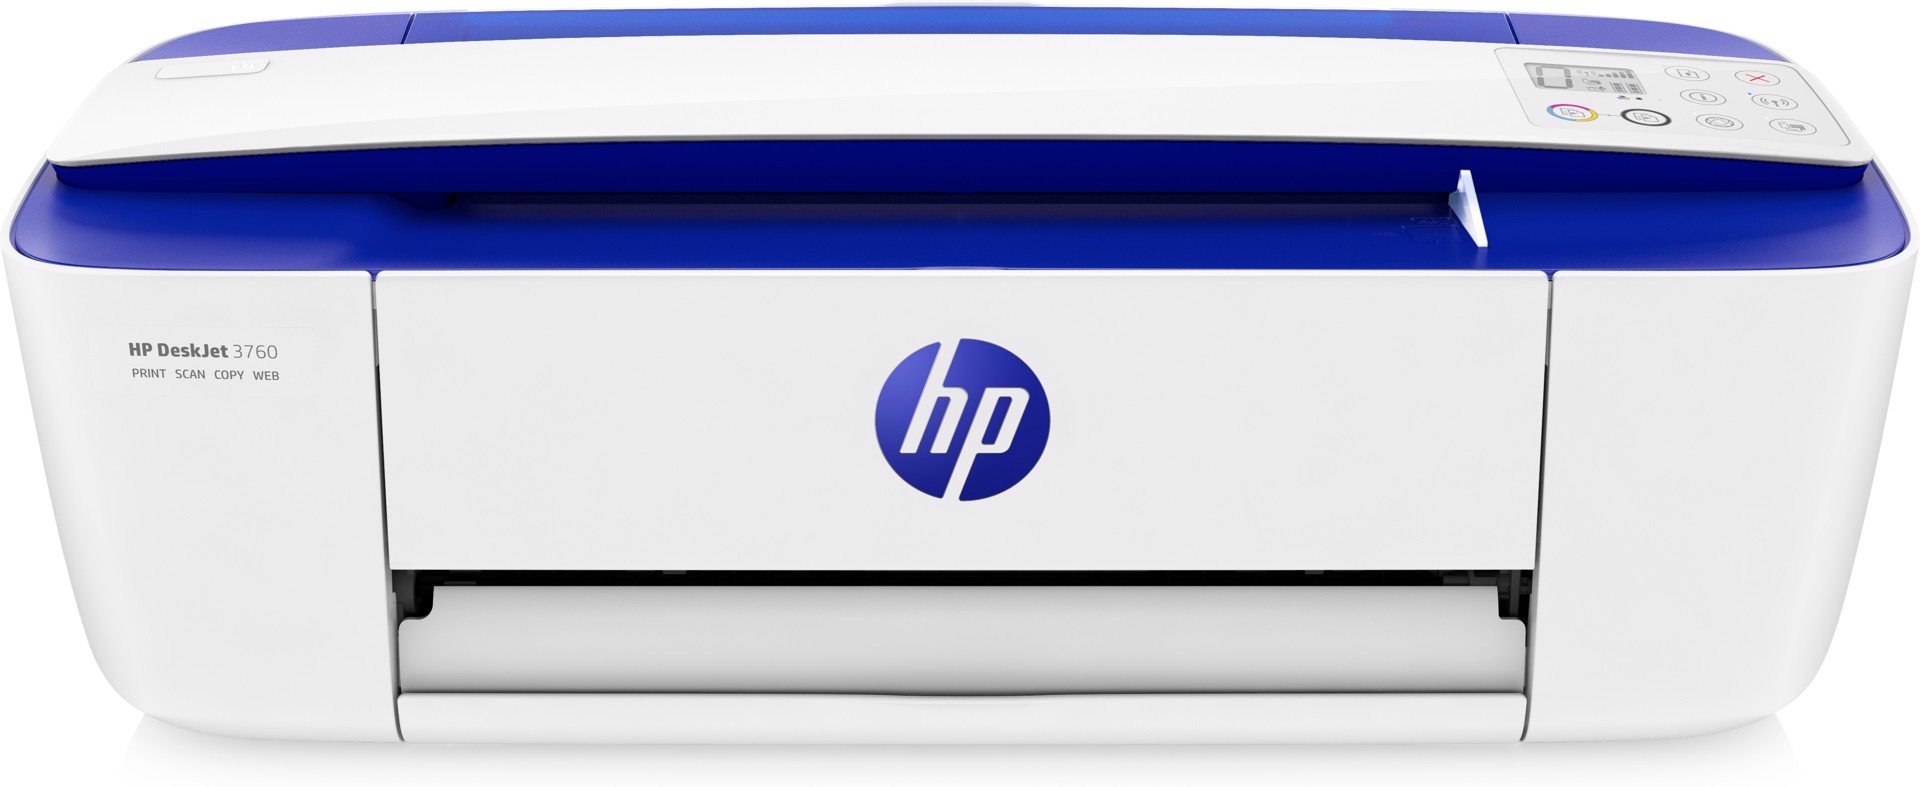 HP DeskJet Stampante multifunzione 3760, Colore, Stampante per